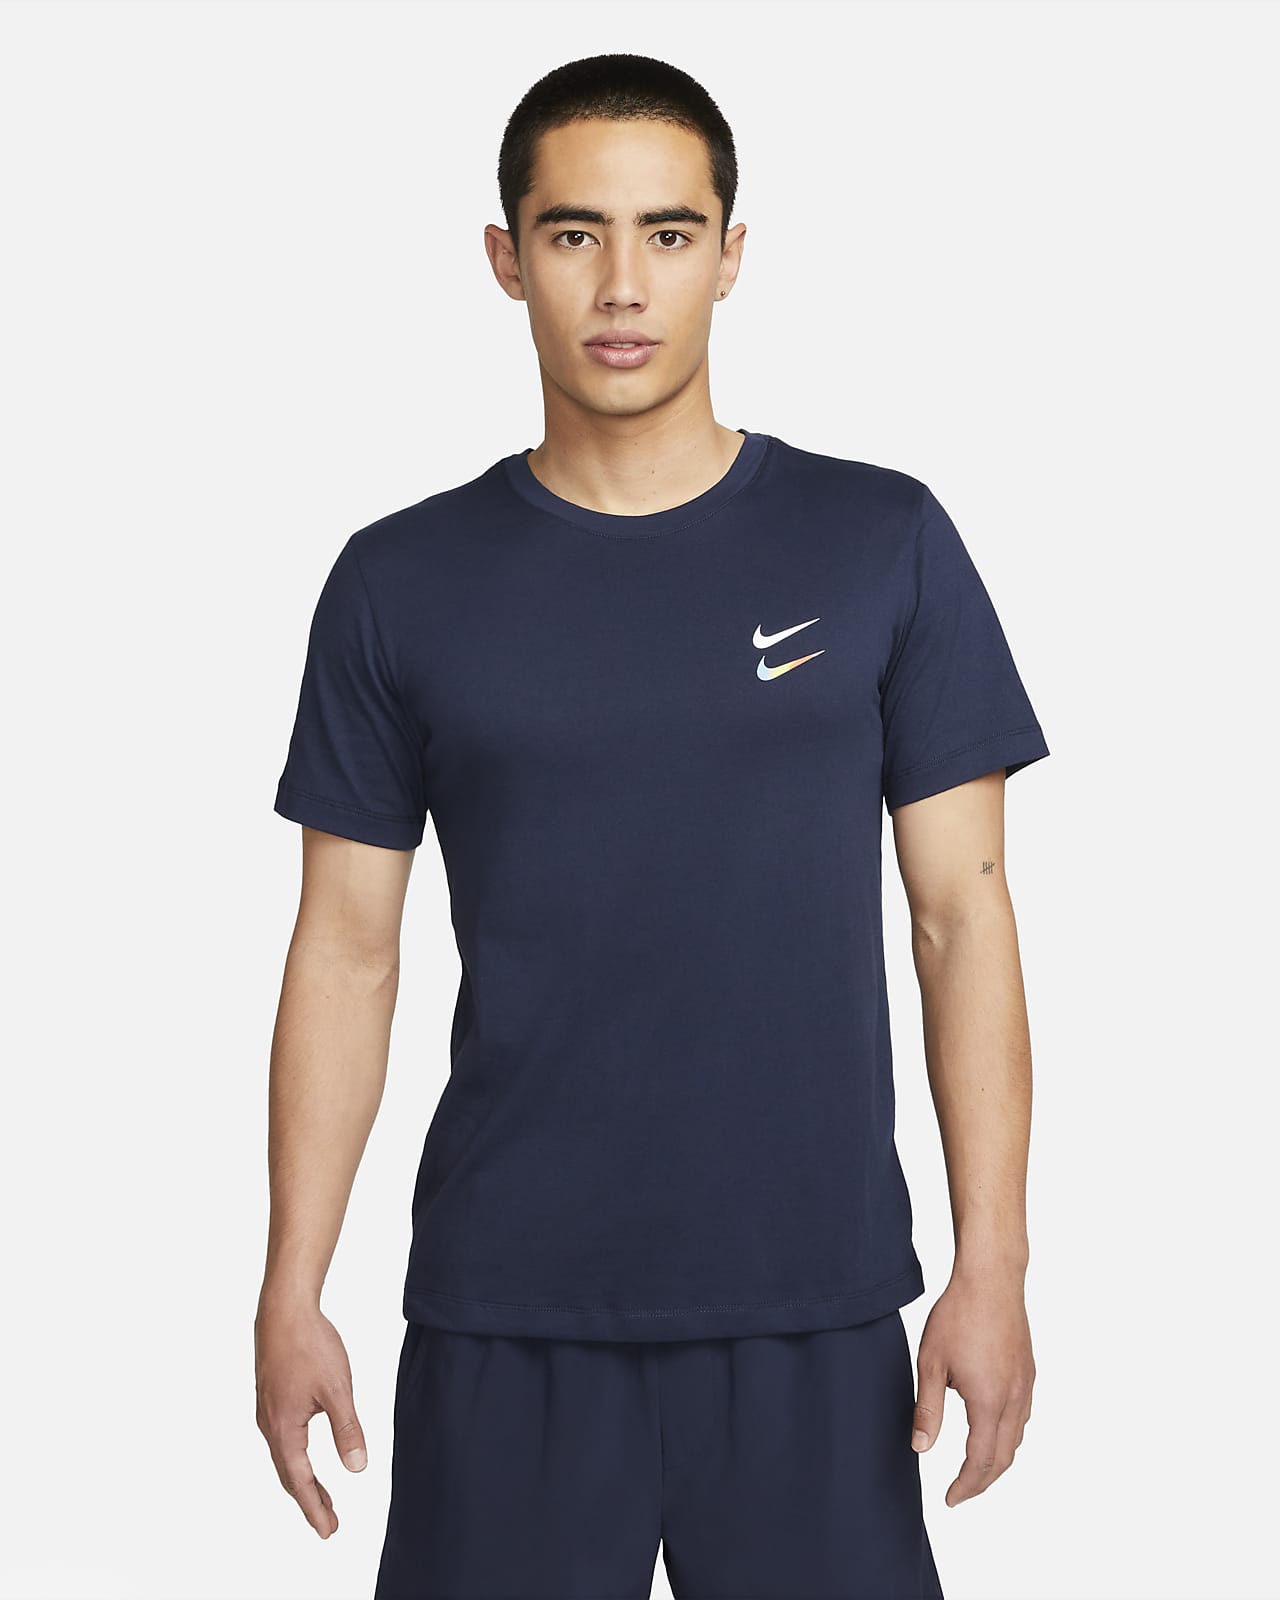 Nike Dri-FIT Men's Training T-Shirt. Nike